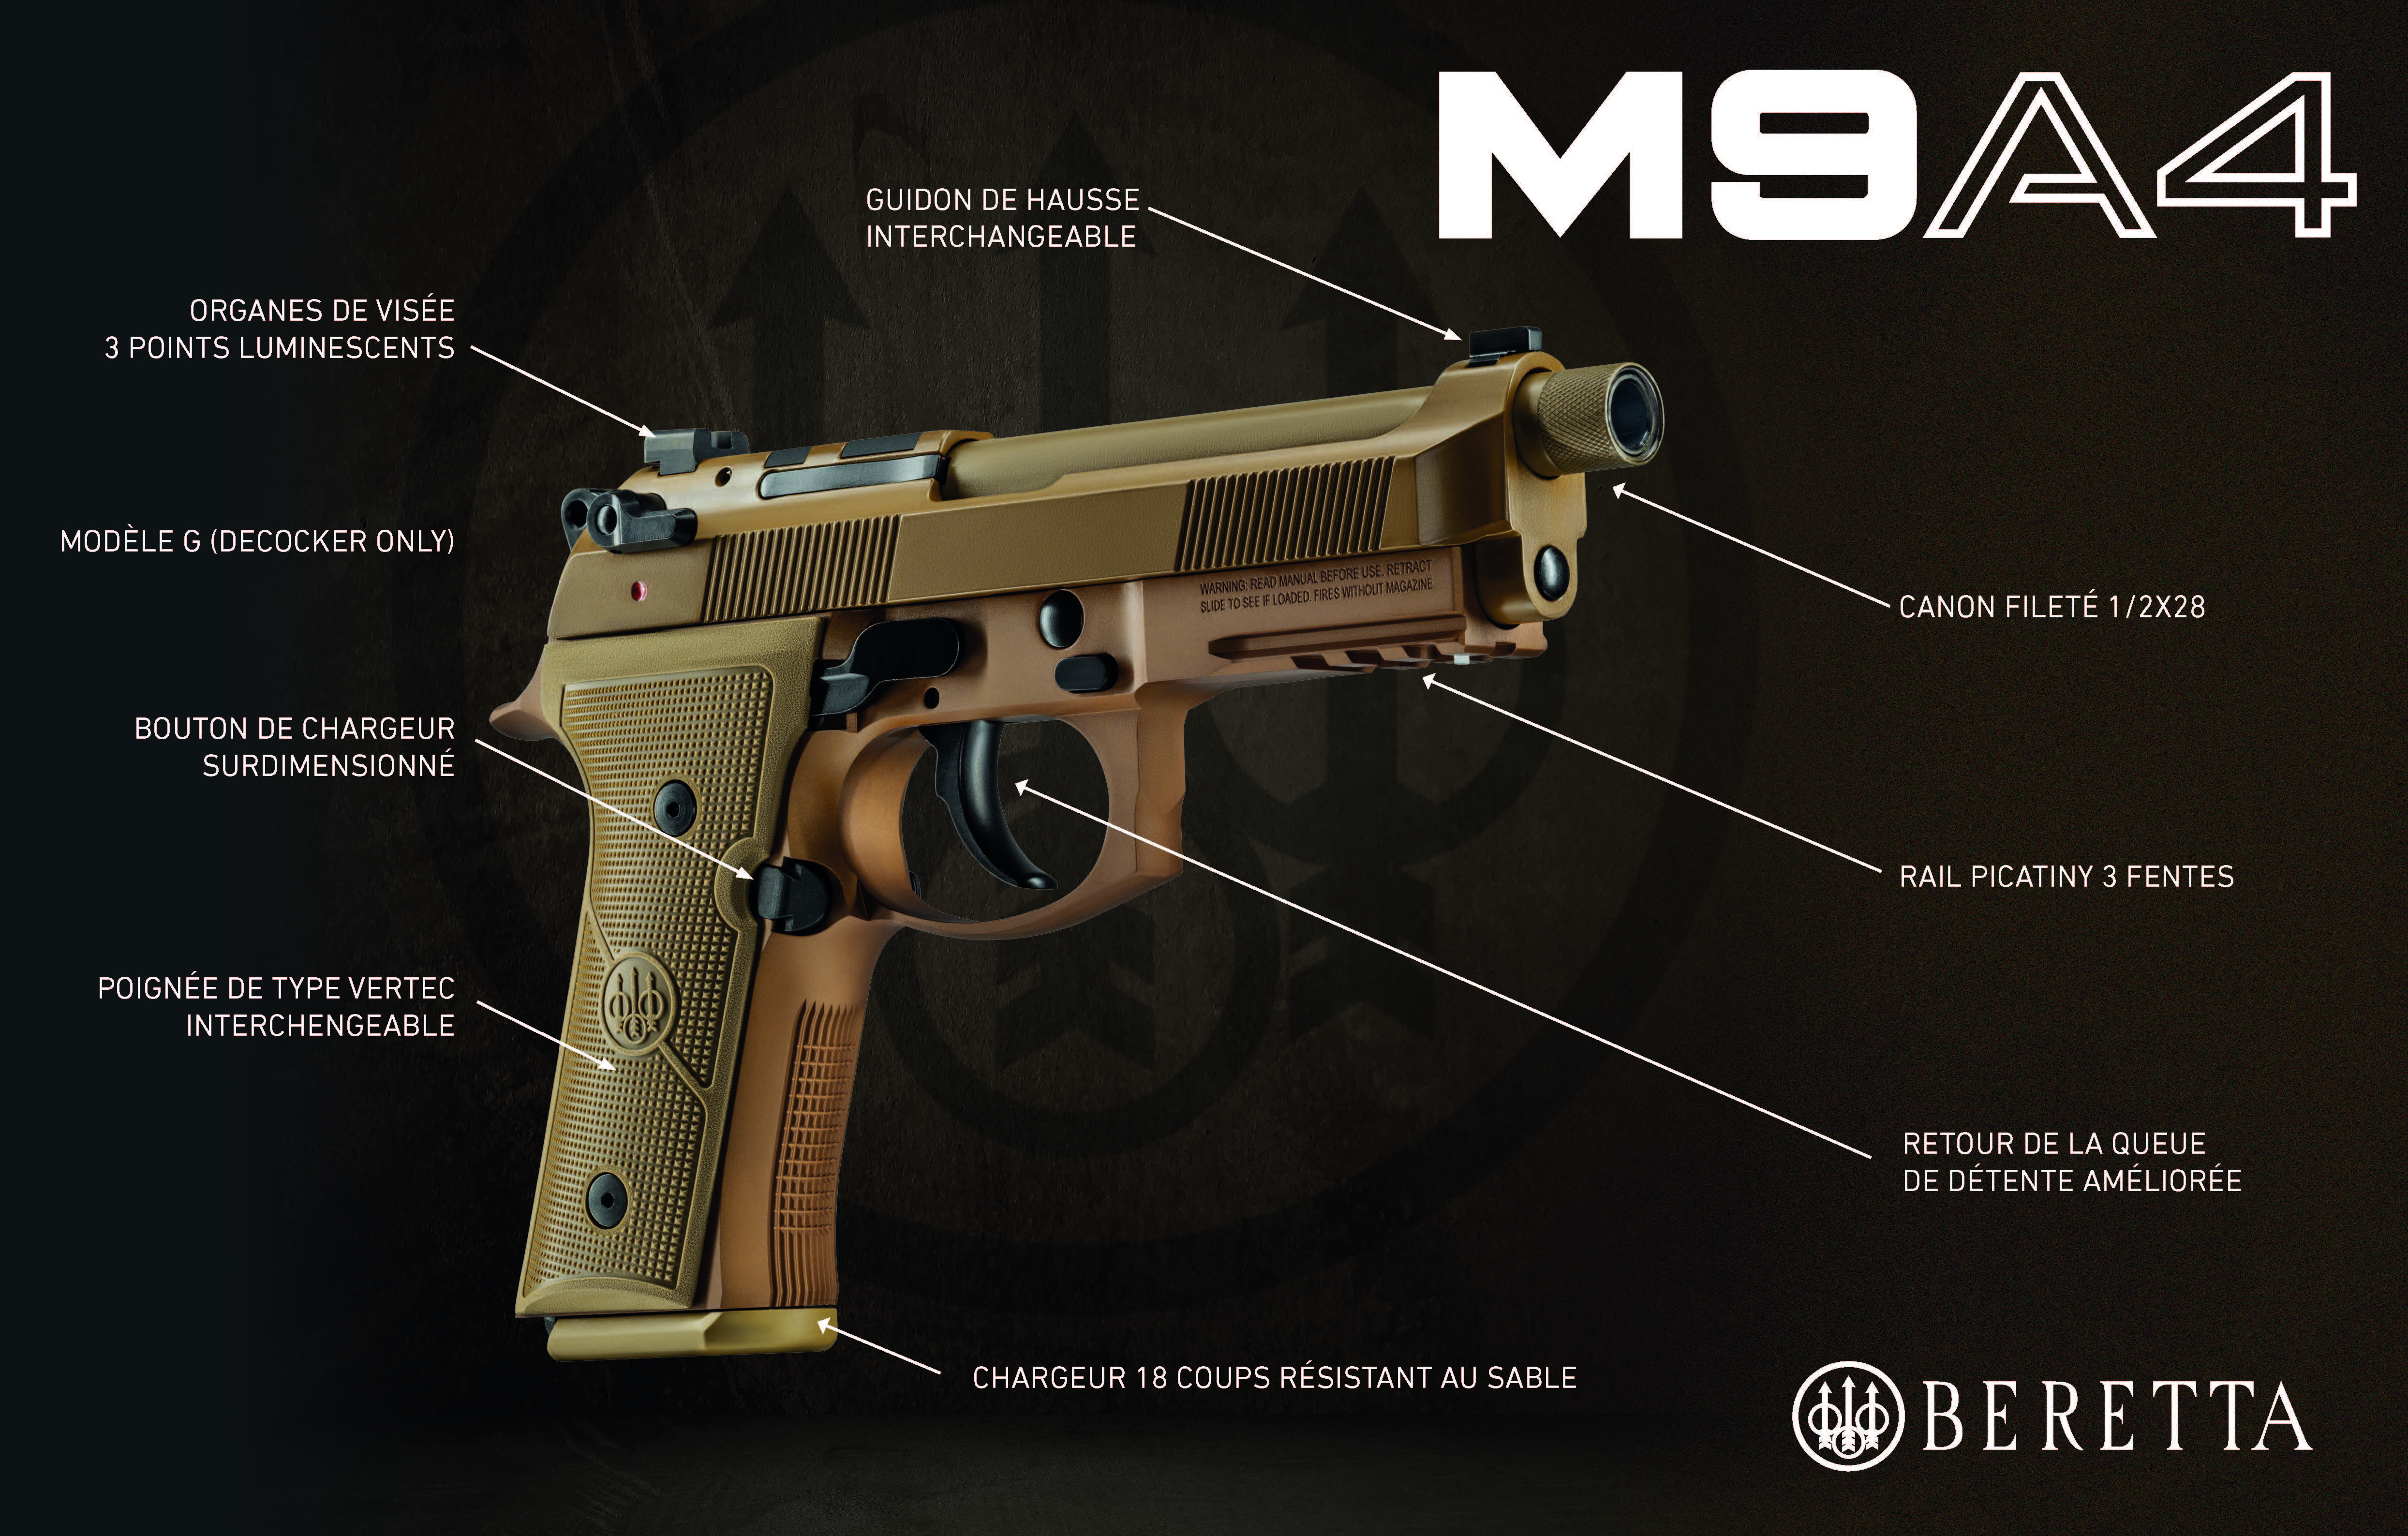 M9A4 pistolet Beretta pour professionnels et la défense et tireurs sportifs